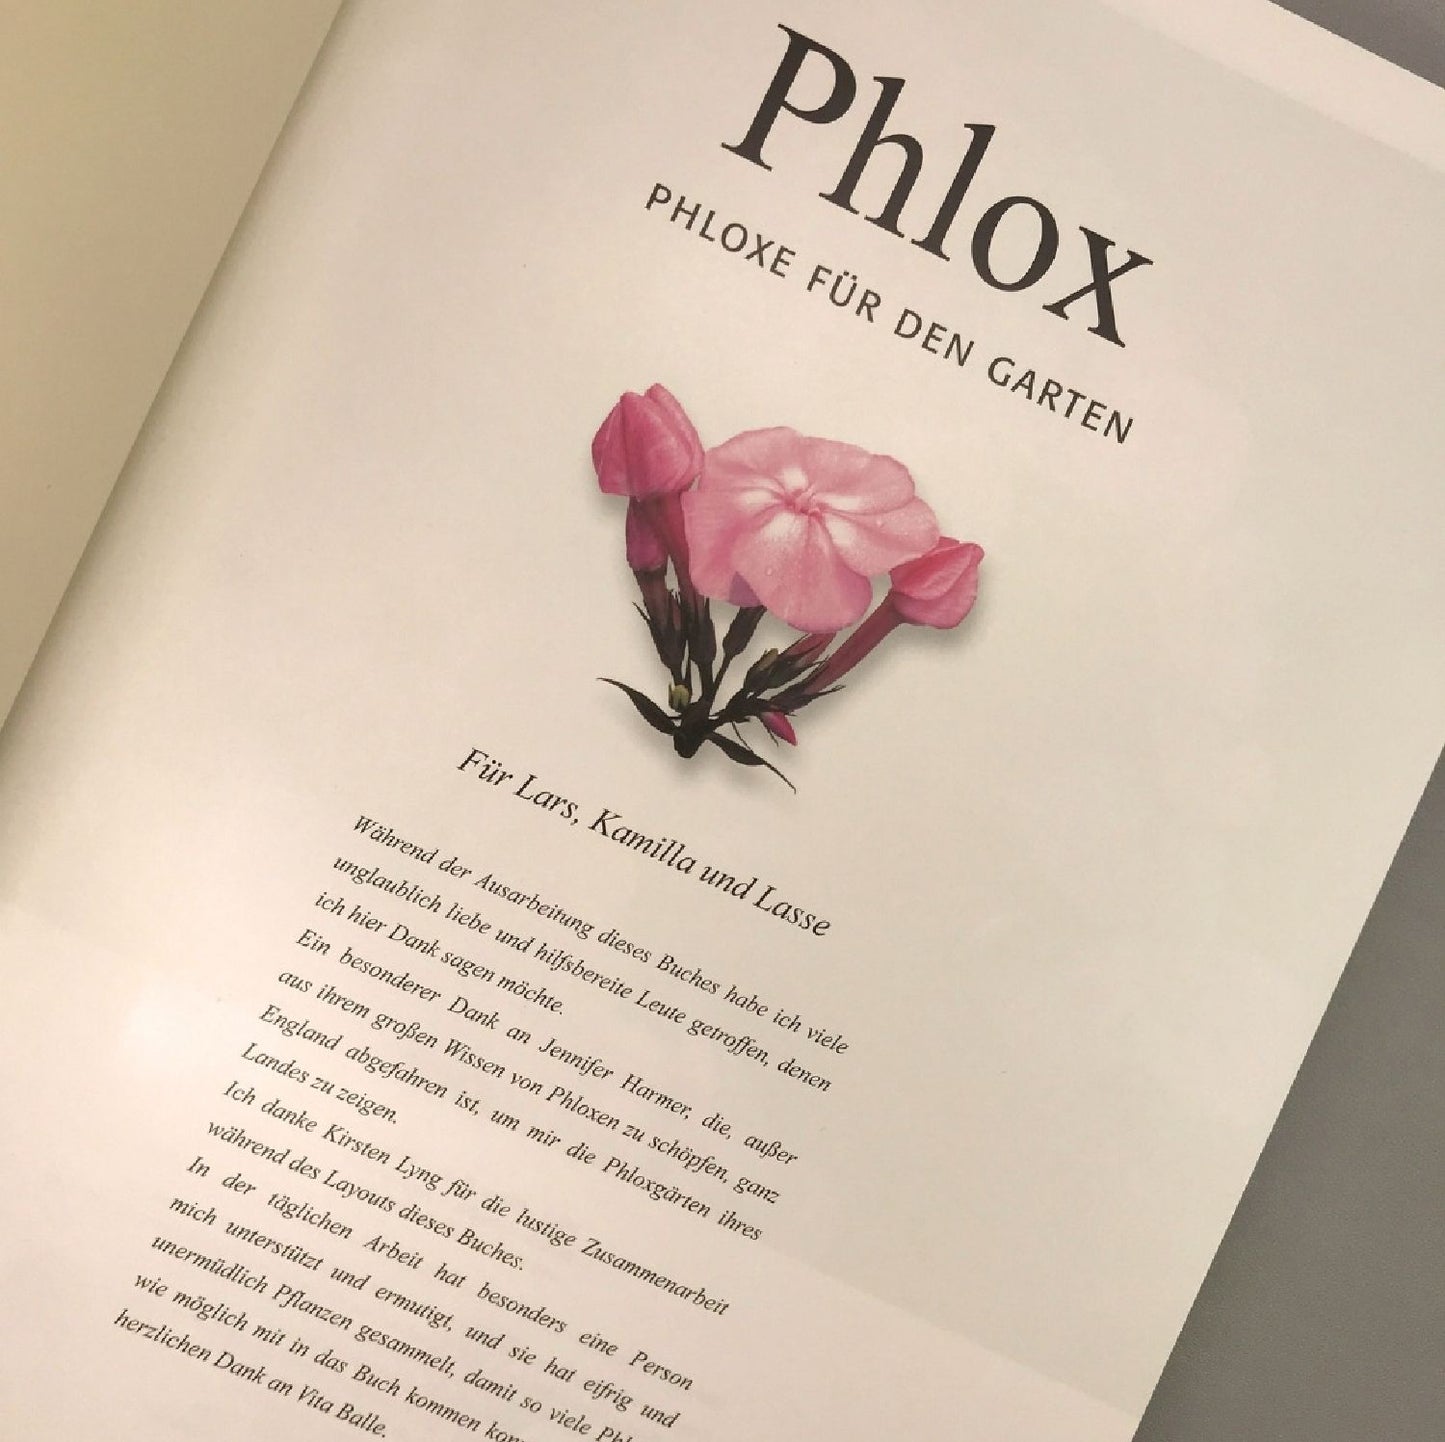 Phlox, Phloxe für den Garten (Birgitte Husted Bendtsen)